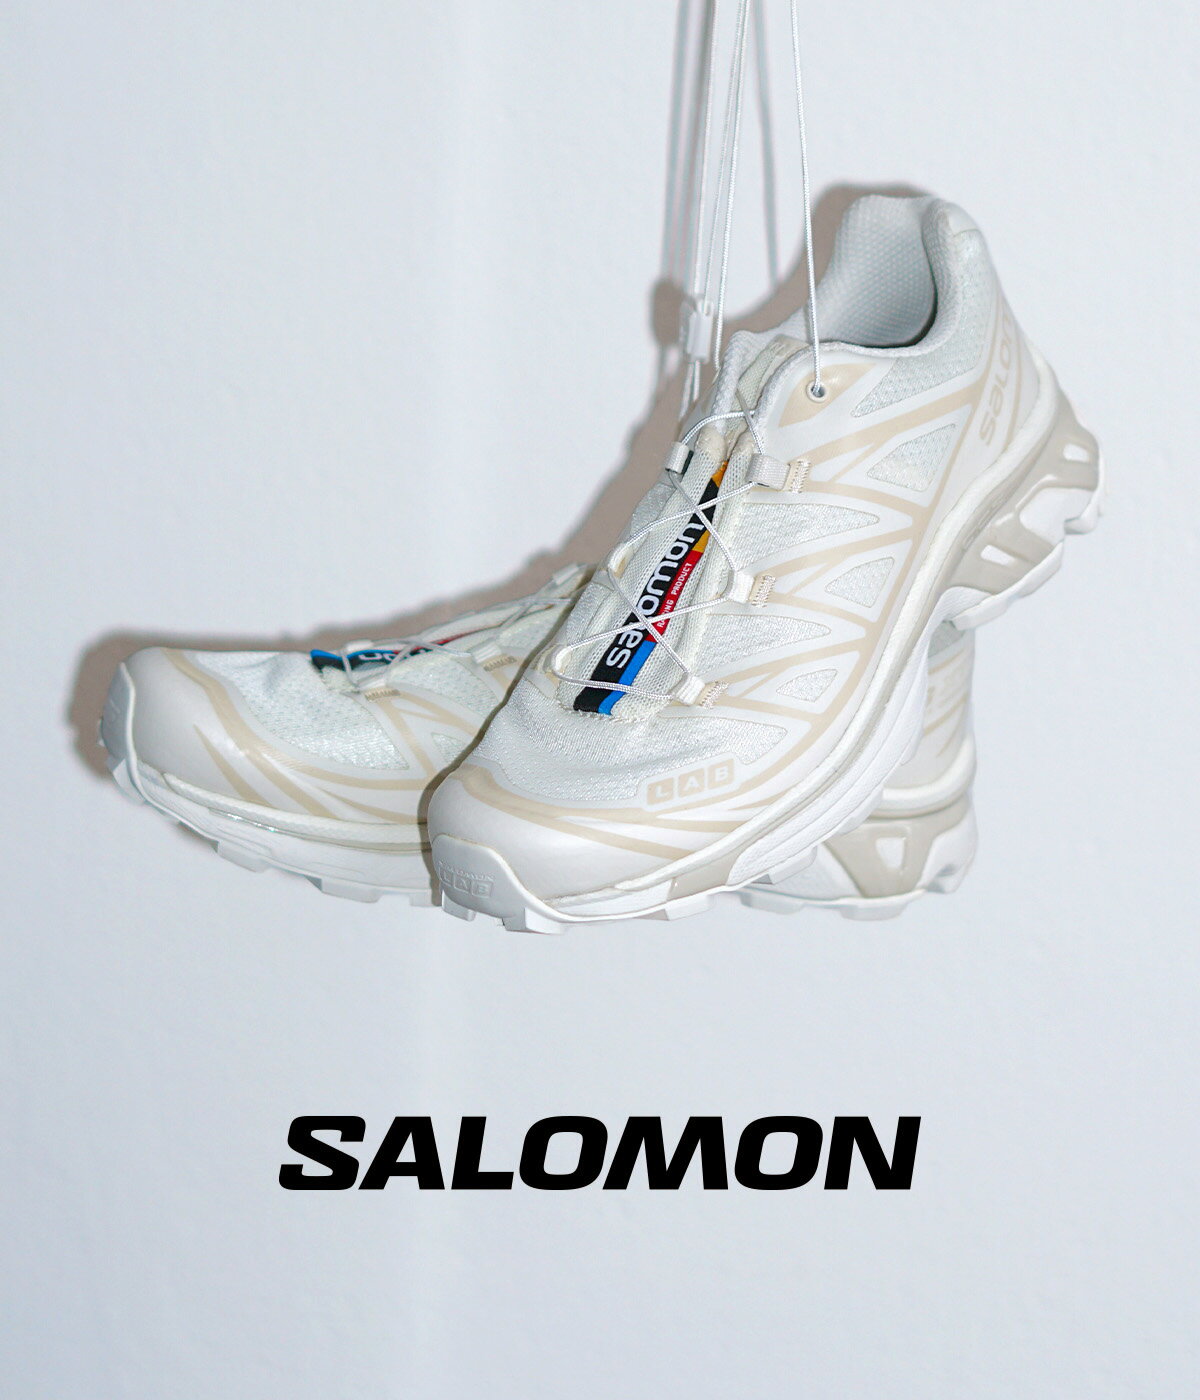 SALOMON SNEAKERS / サロモン スニーカーズ : XT-6 : 2024SS サロモン Salomon スニーカー シューズ 靴 バニラアイス ホワイト 白 ローカット ランニング シューズ アウトドア トレイルランニング トレッキング スポーティー : L47445300